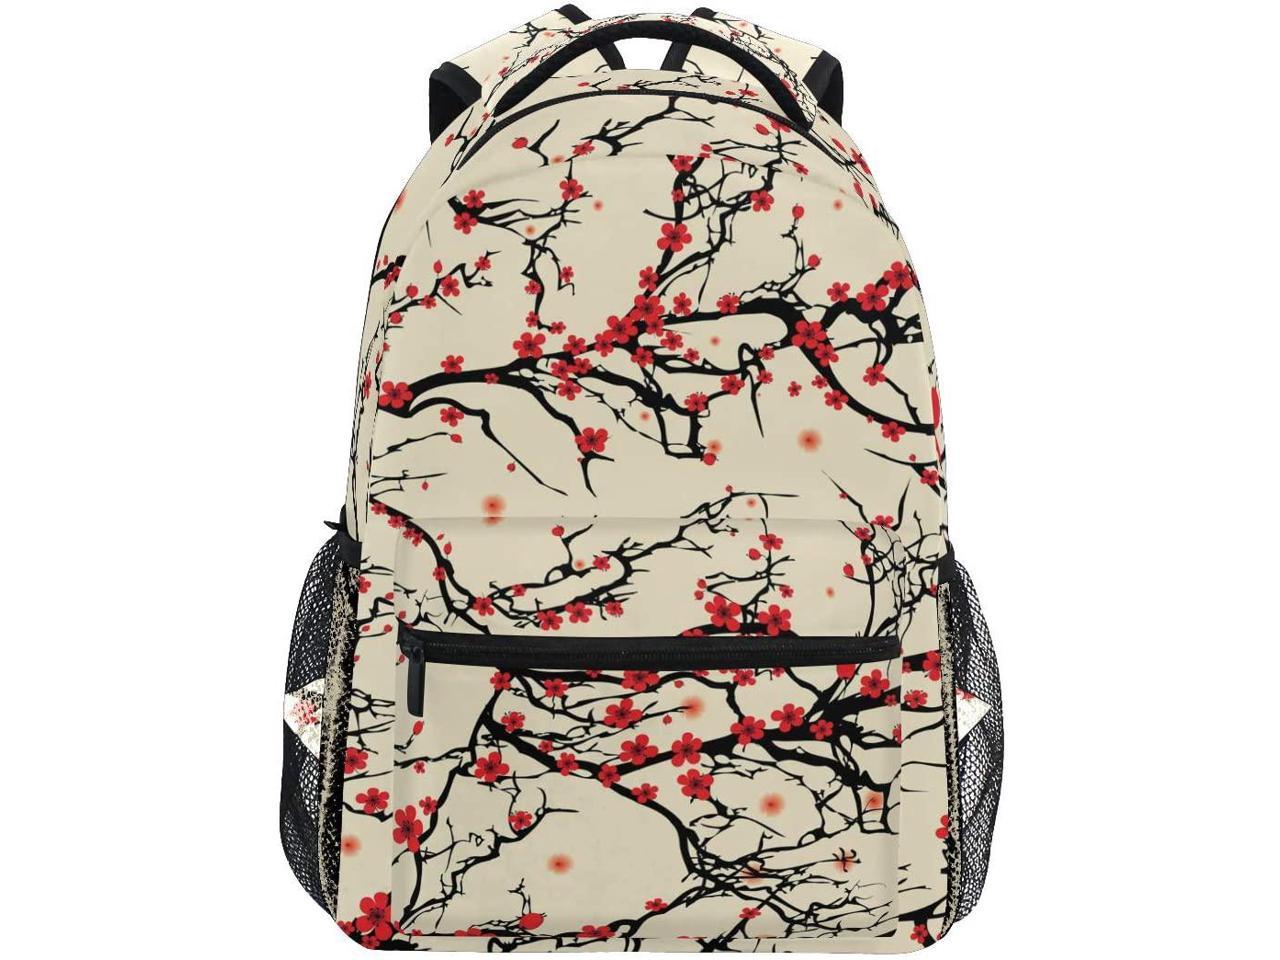 MAPOLO Dachshund Dog School Backpack Travel Bag Rucksack College Bookbag Travel Laptop Bag Daypack Bag for Men Women